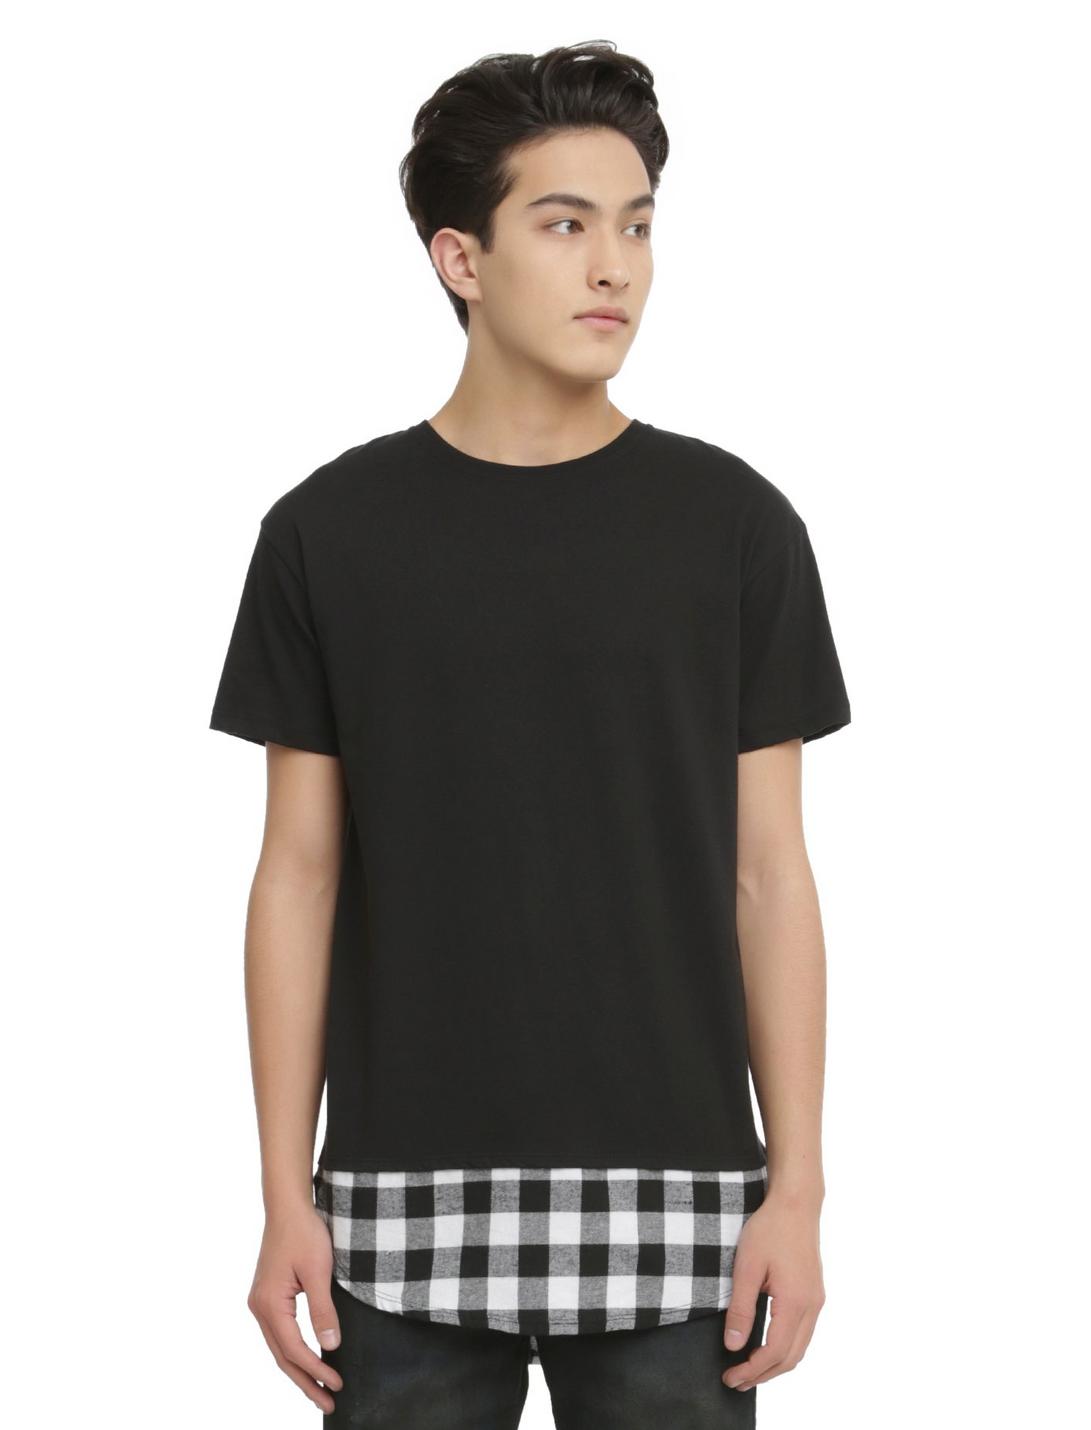 KDNK Black & White Fade Curve Long T-Shirt, BLACK, hi-res